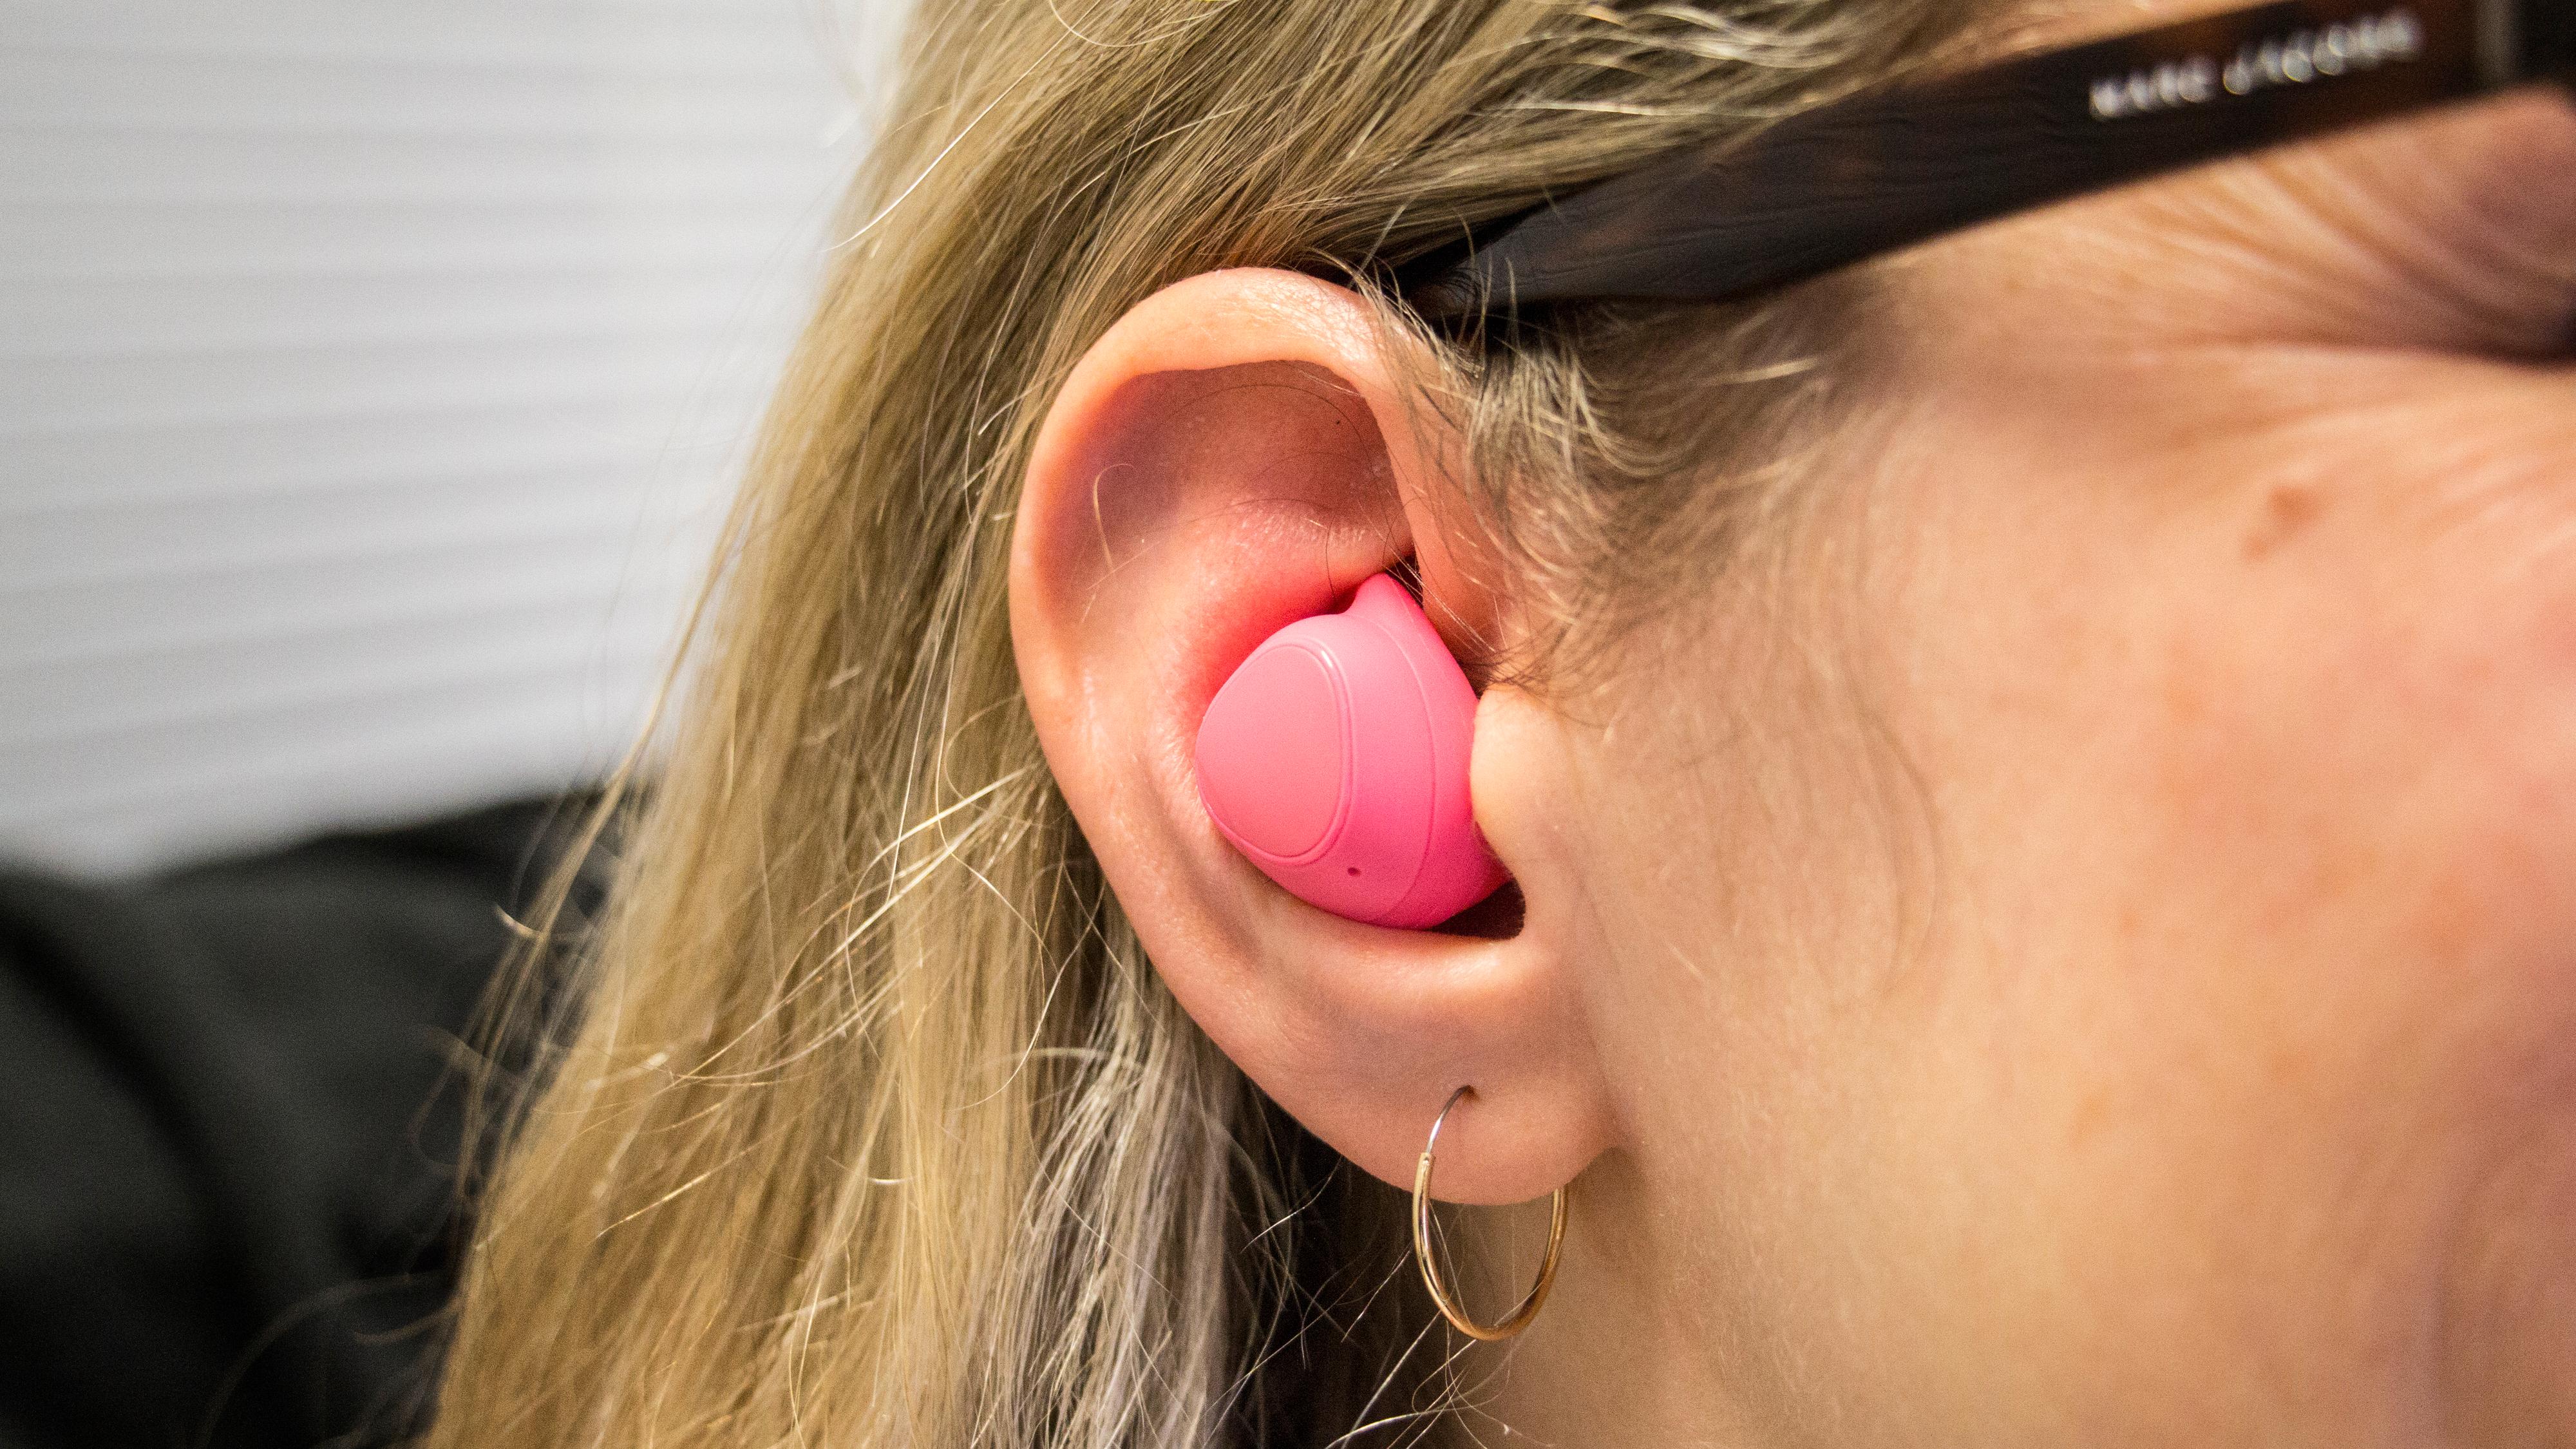 IconX er relativt diskré i øret, om enn kanskje ikke i den rosa fargen. Bilde: Stein Jarle Olsen, Tek.no